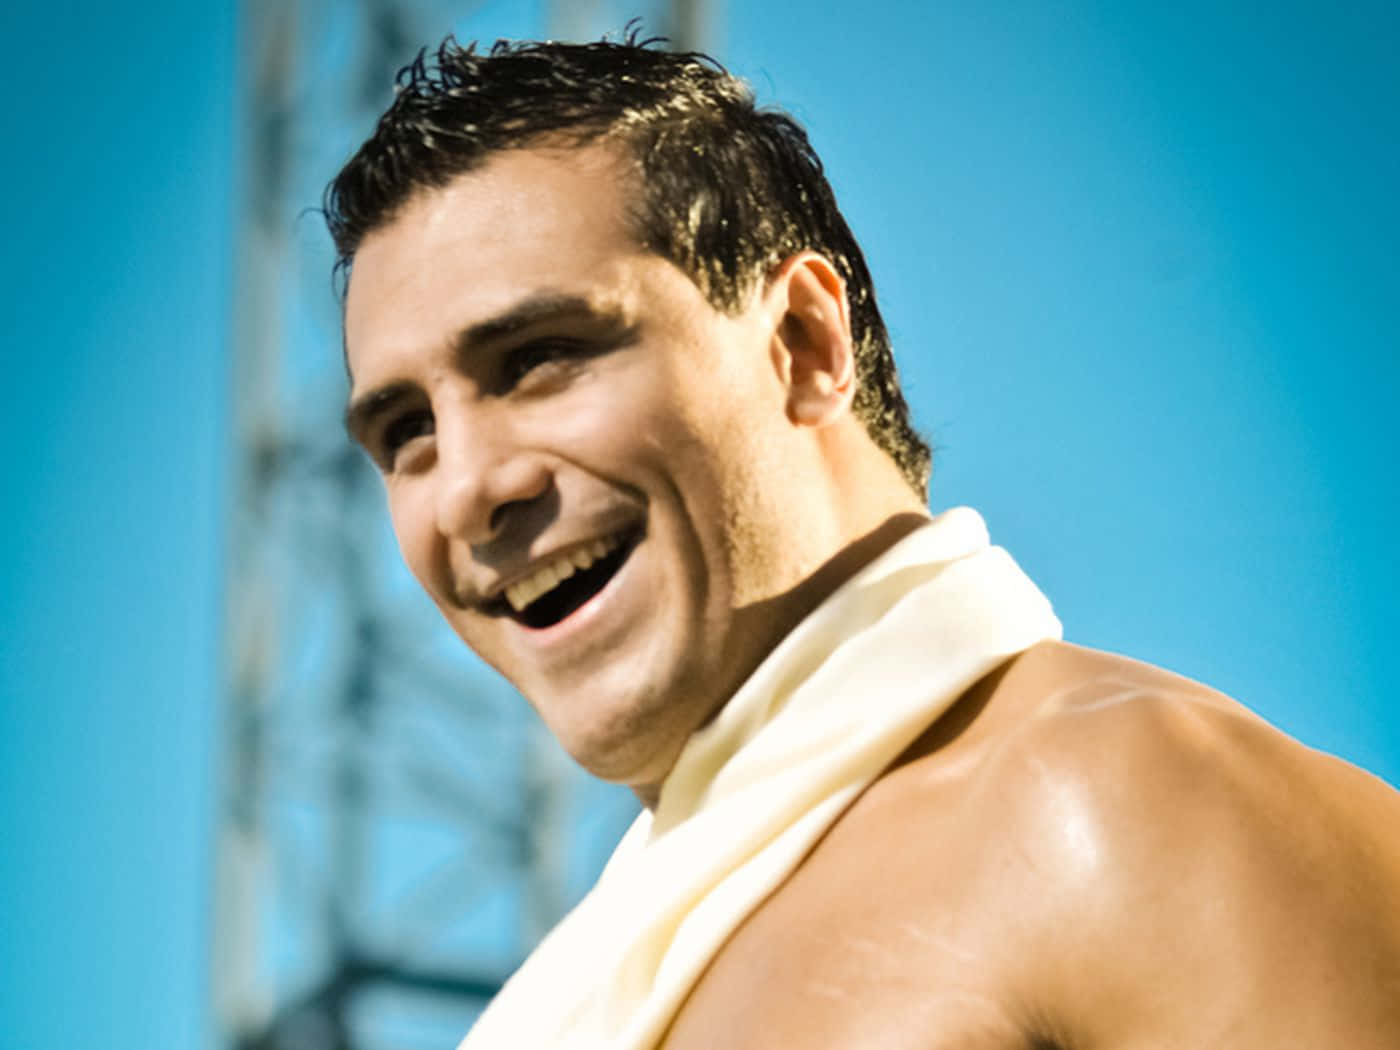 Smiling Alberto Del Rio WWE Star Wallpaper